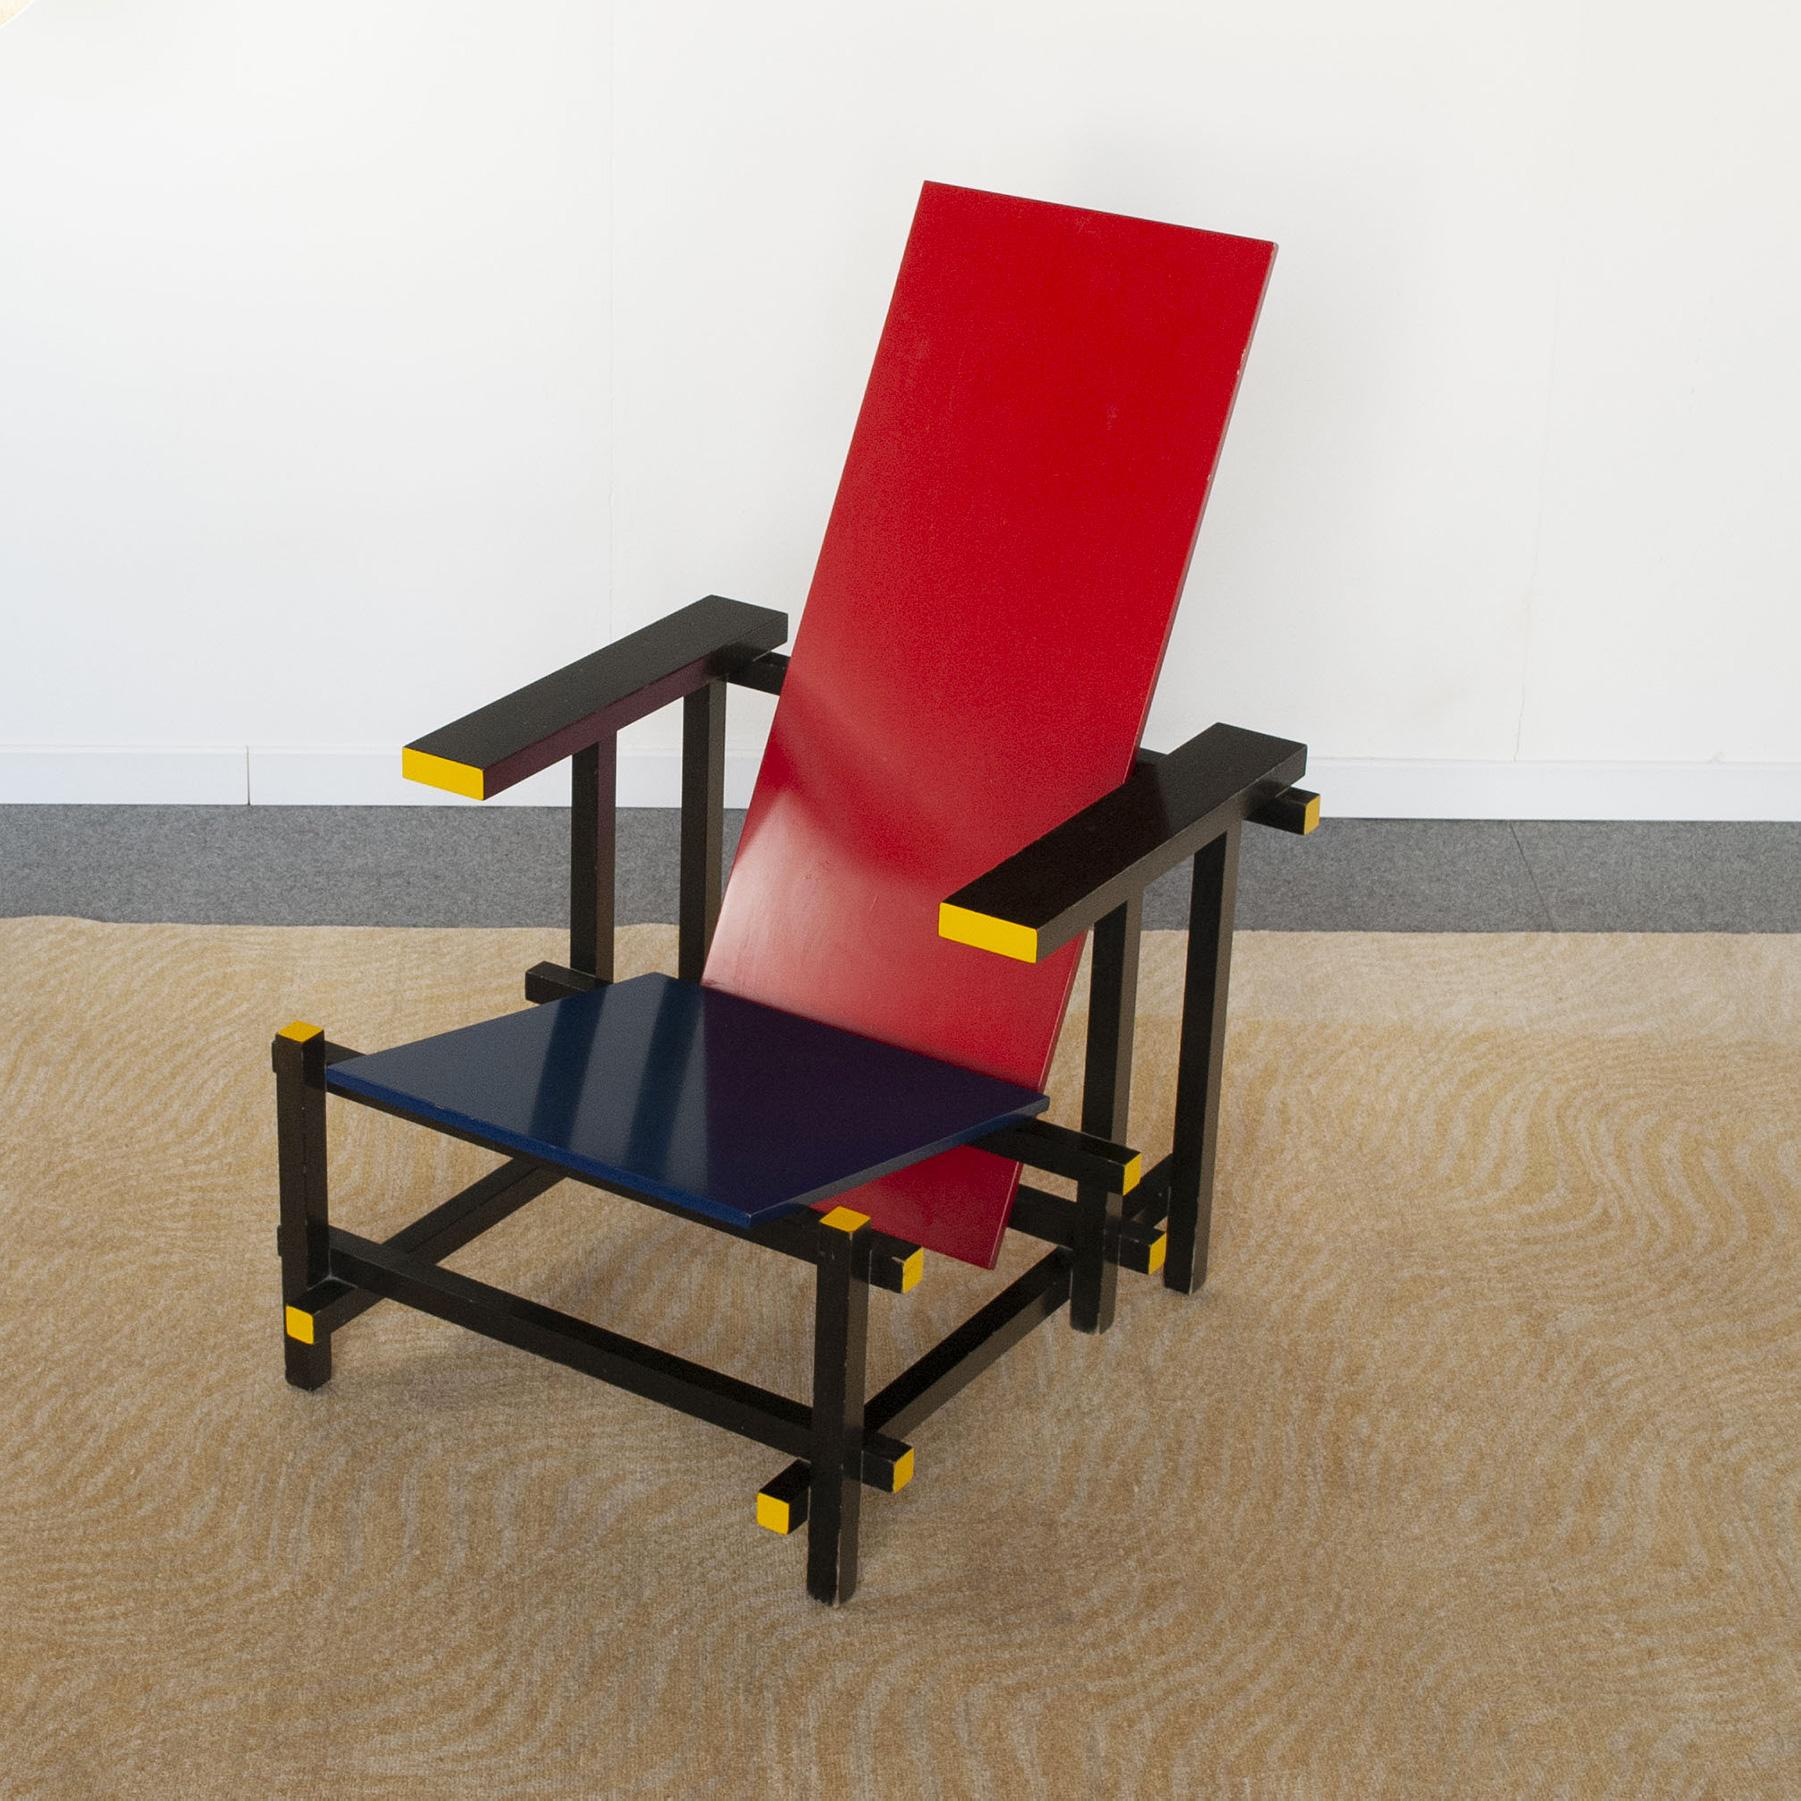 Der Sessel Rood Blauwe (Rot und Blau) des niederländischen Designers Gerrit Thomas Rietveld, den Cassina in den 1960er Jahren produzierte, ist eine weltweite Ikone des neoplastischen Designs.